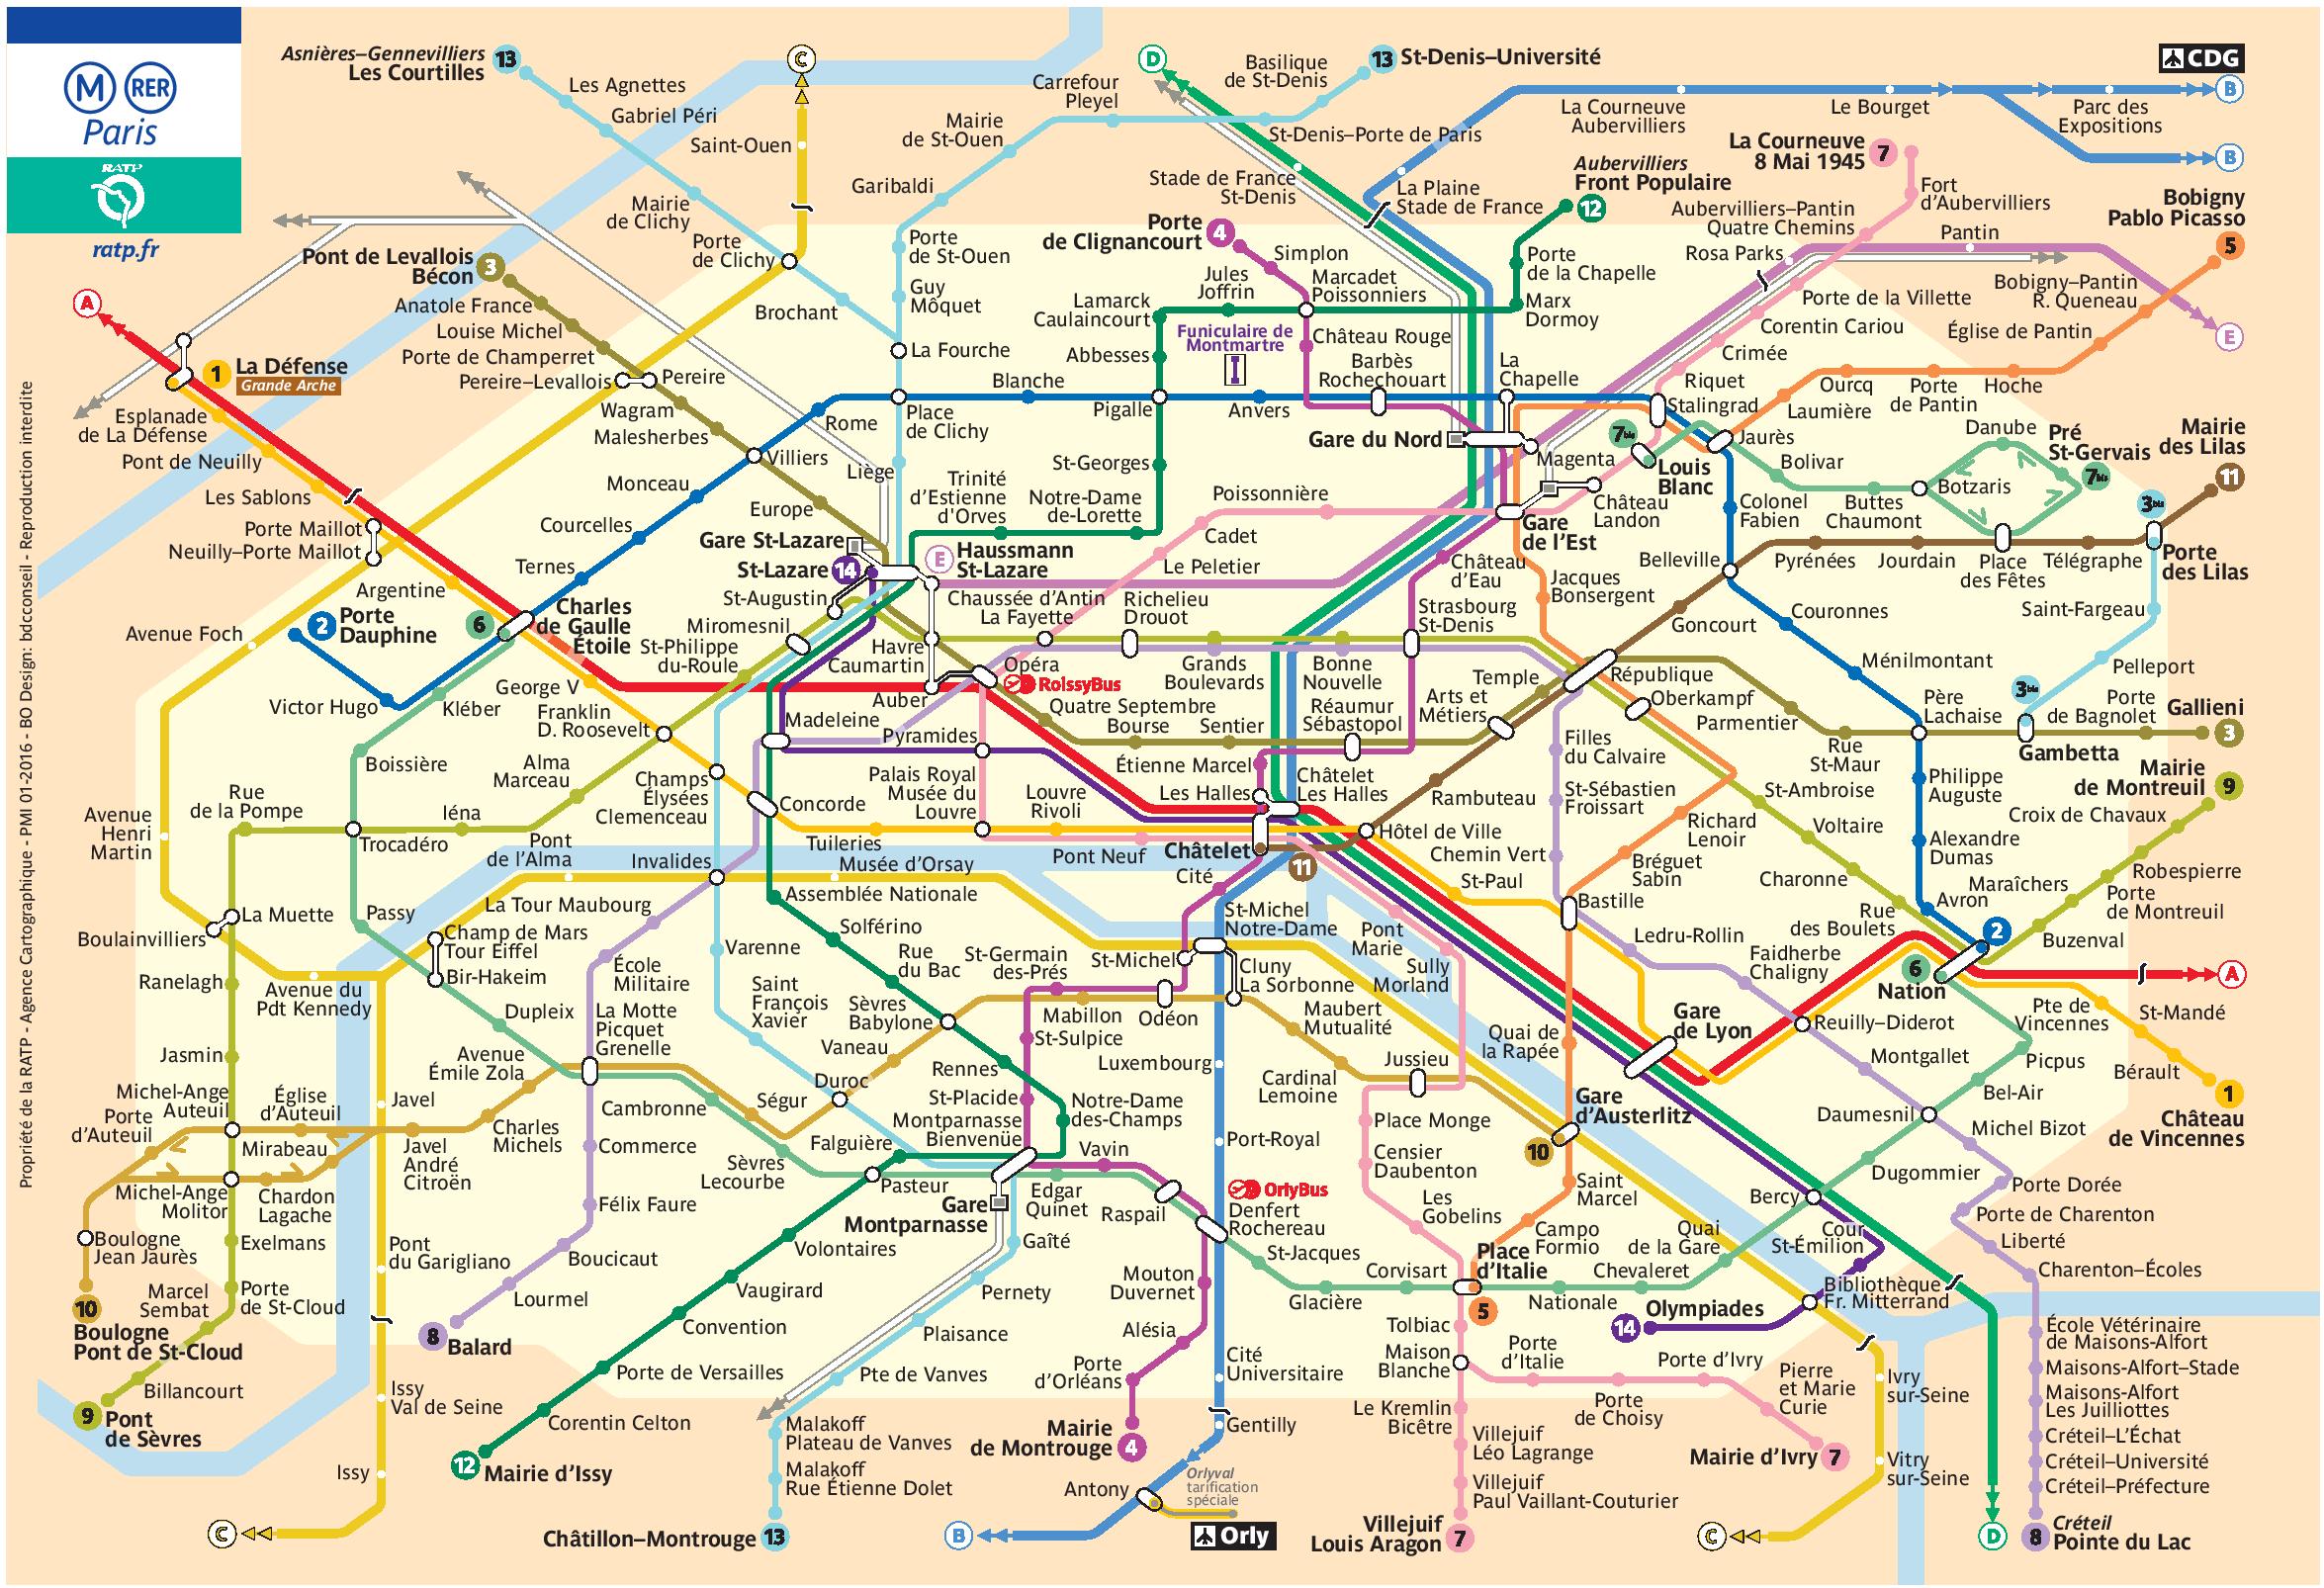 Free RATP Paris metro map to download in PDF - Night Fox Tips